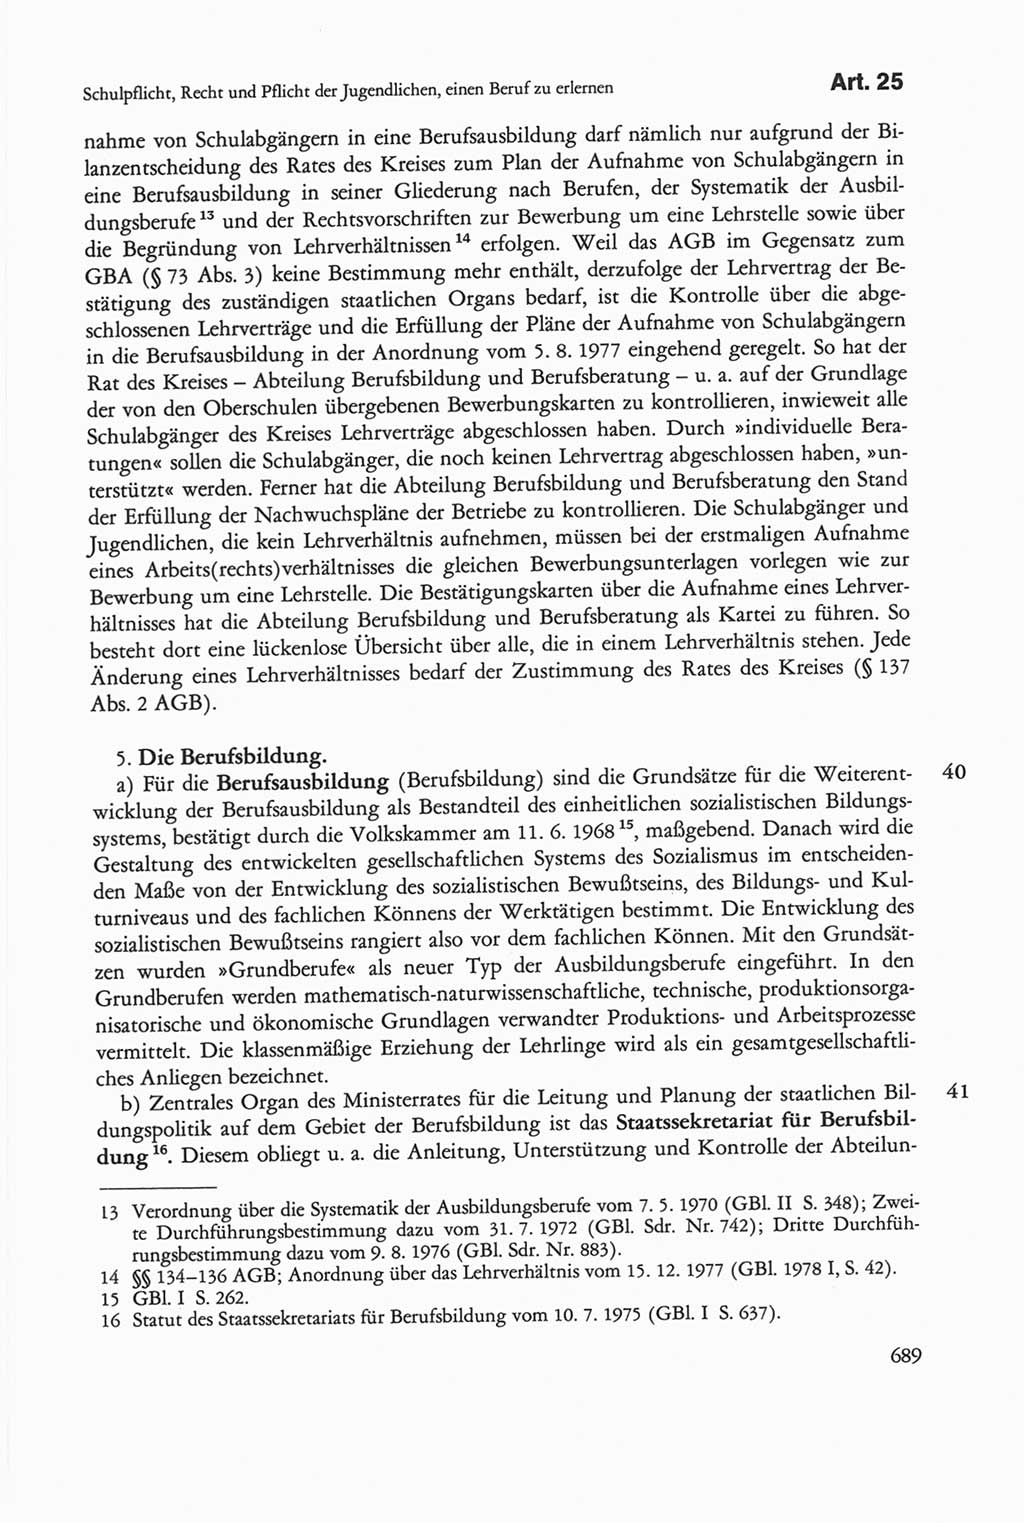 Die sozialistische Verfassung der Deutschen Demokratischen Republik (DDR), Kommentar mit einem Nachtrag 1997, Seite 689 (Soz. Verf. DDR Komm. Nachtr. 1997, S. 689)